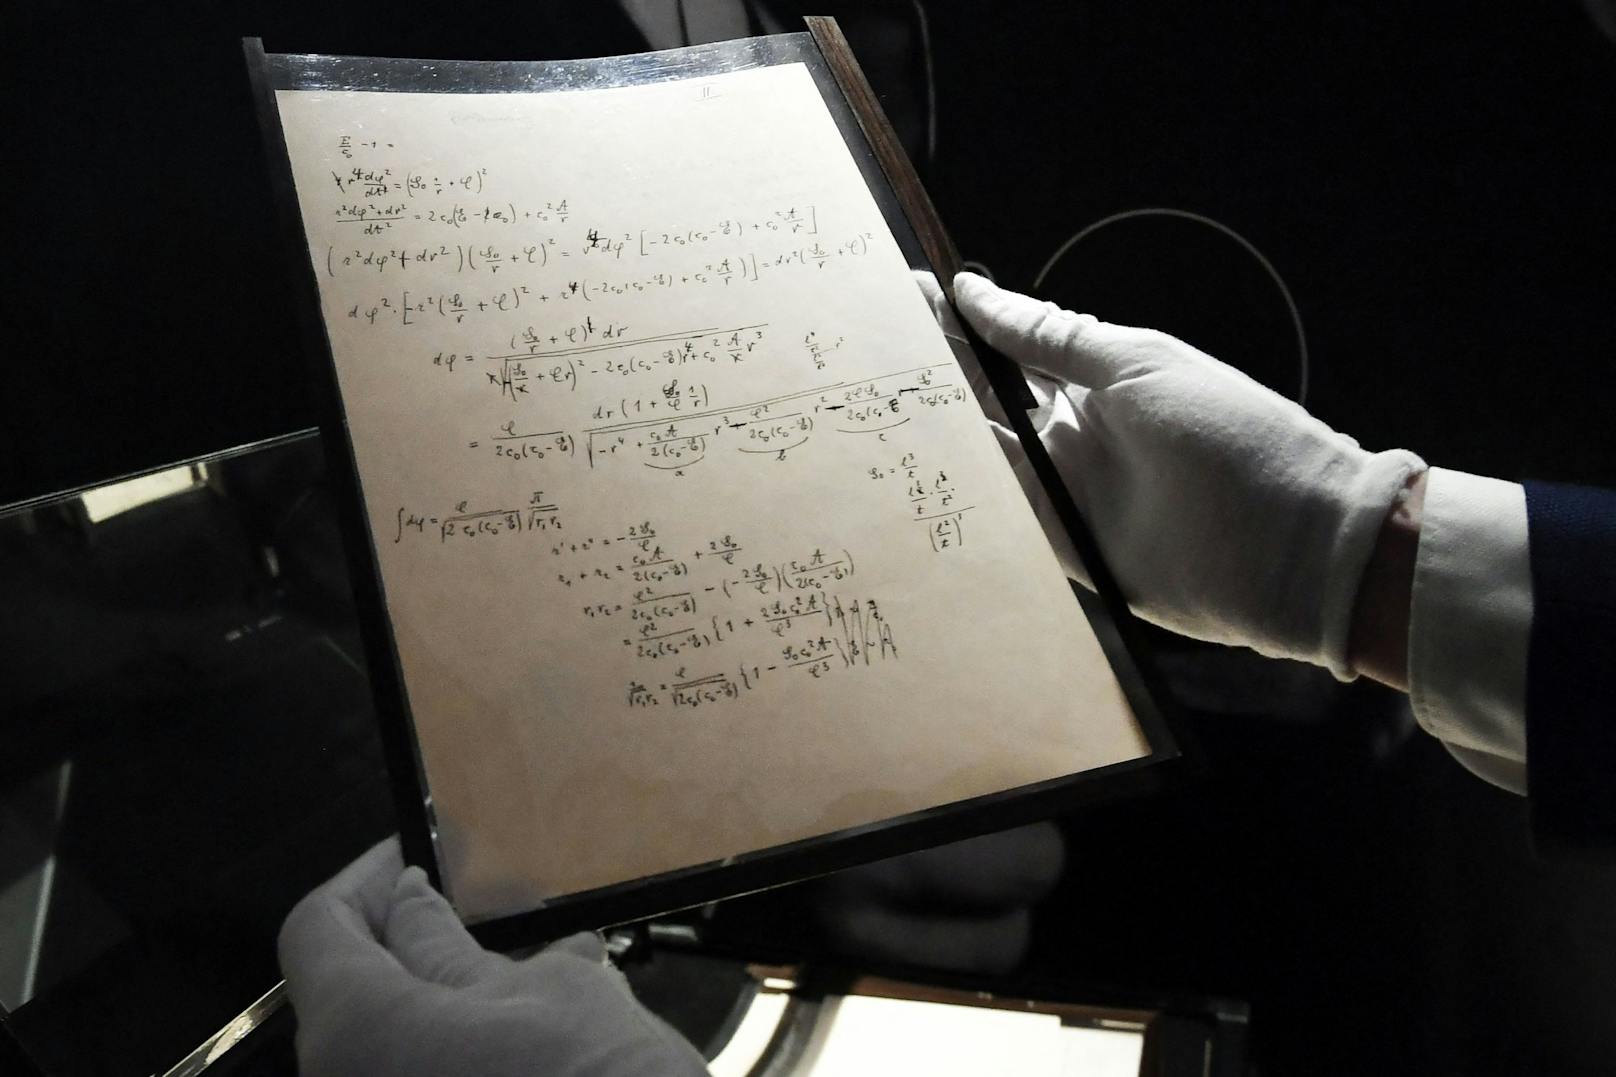 Das Manuskript handelt von der Relativitästheorie, mit der Einstein die Physik revolutionierte.&nbsp;